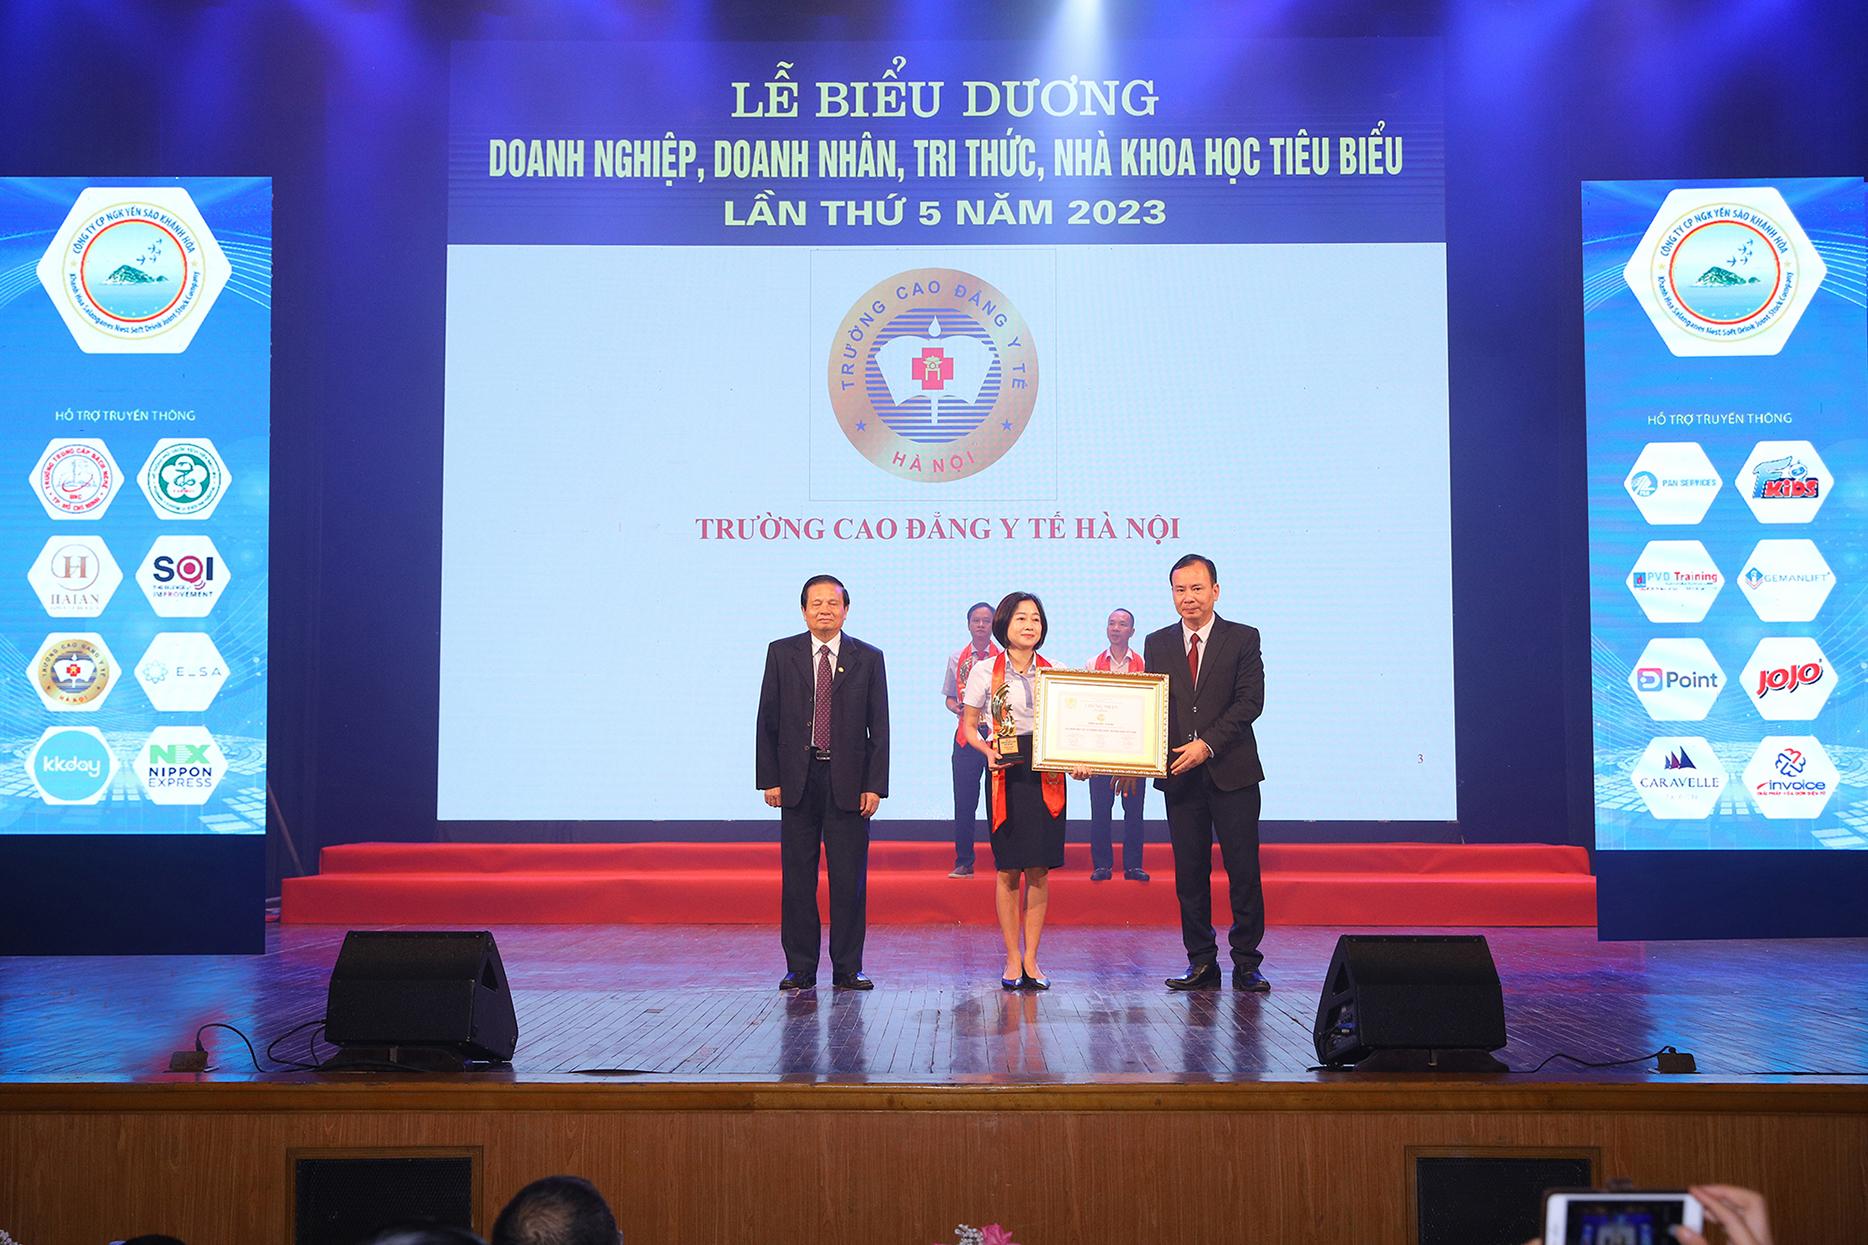 Trường Cao đẳng Y tế Hà Nội được Vinh danh Top 10 Thương hiệu được tin dùng nhất Việt Nam